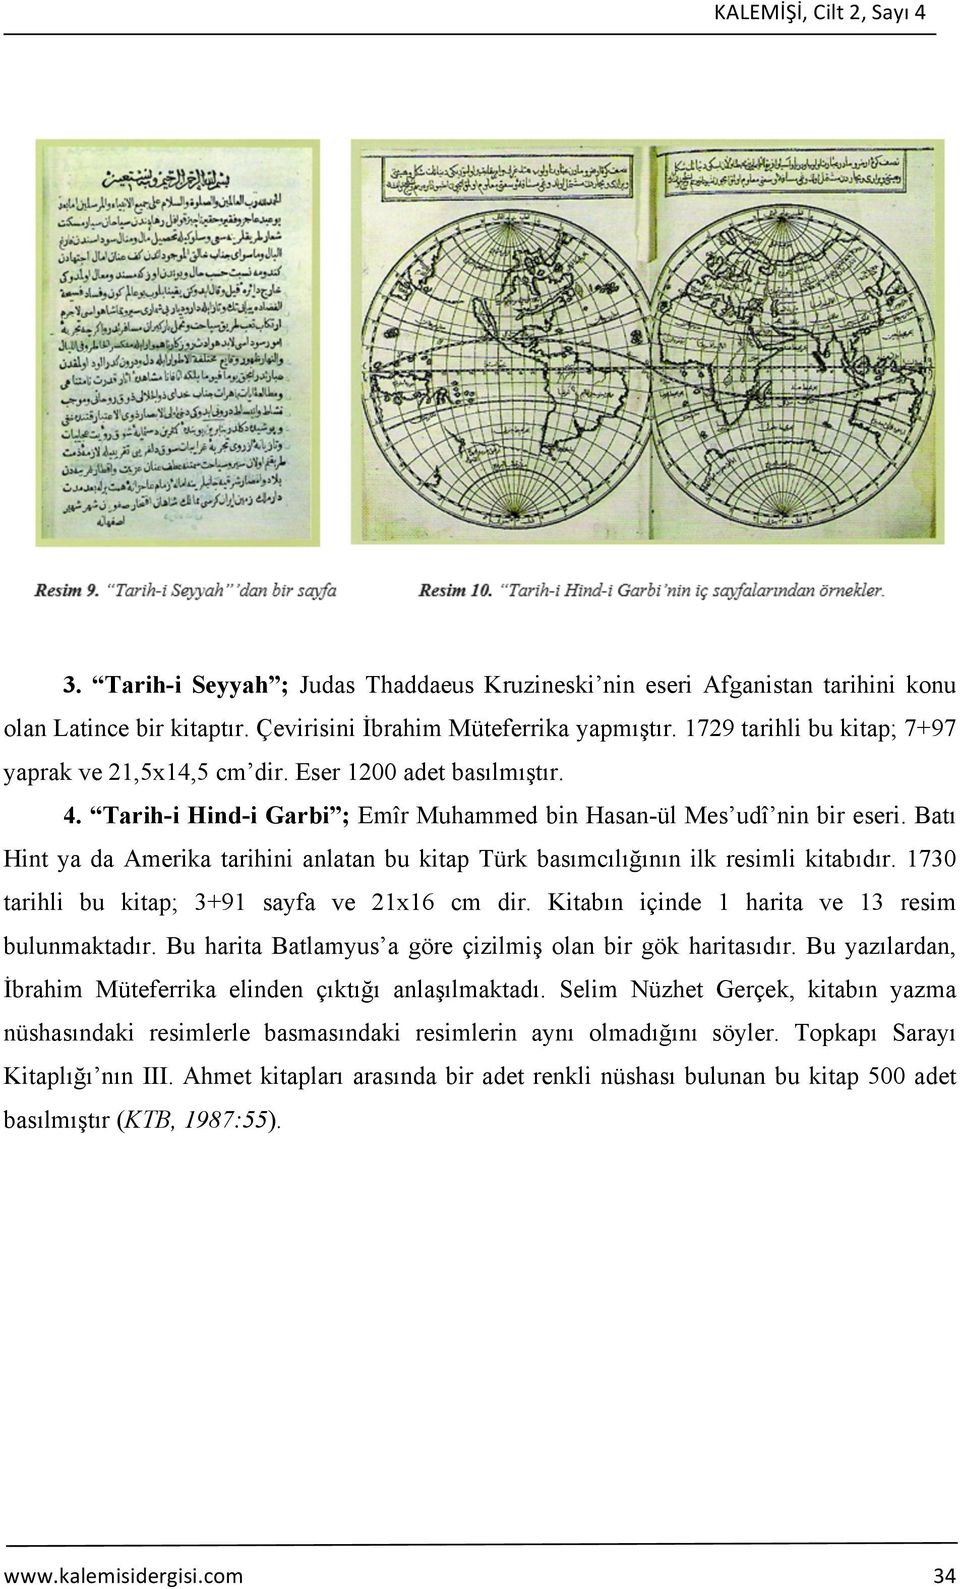 Batı Hint ya da Amerika tarihini anlatan bu kitap Türk basımcılığının ilk resimli kitabıdır. 1730 tarihli bu kitap; 3+91 sayfa ve 21x16 cm dir. Kitabın içinde 1 harita ve 13 resim bulunmaktadır.